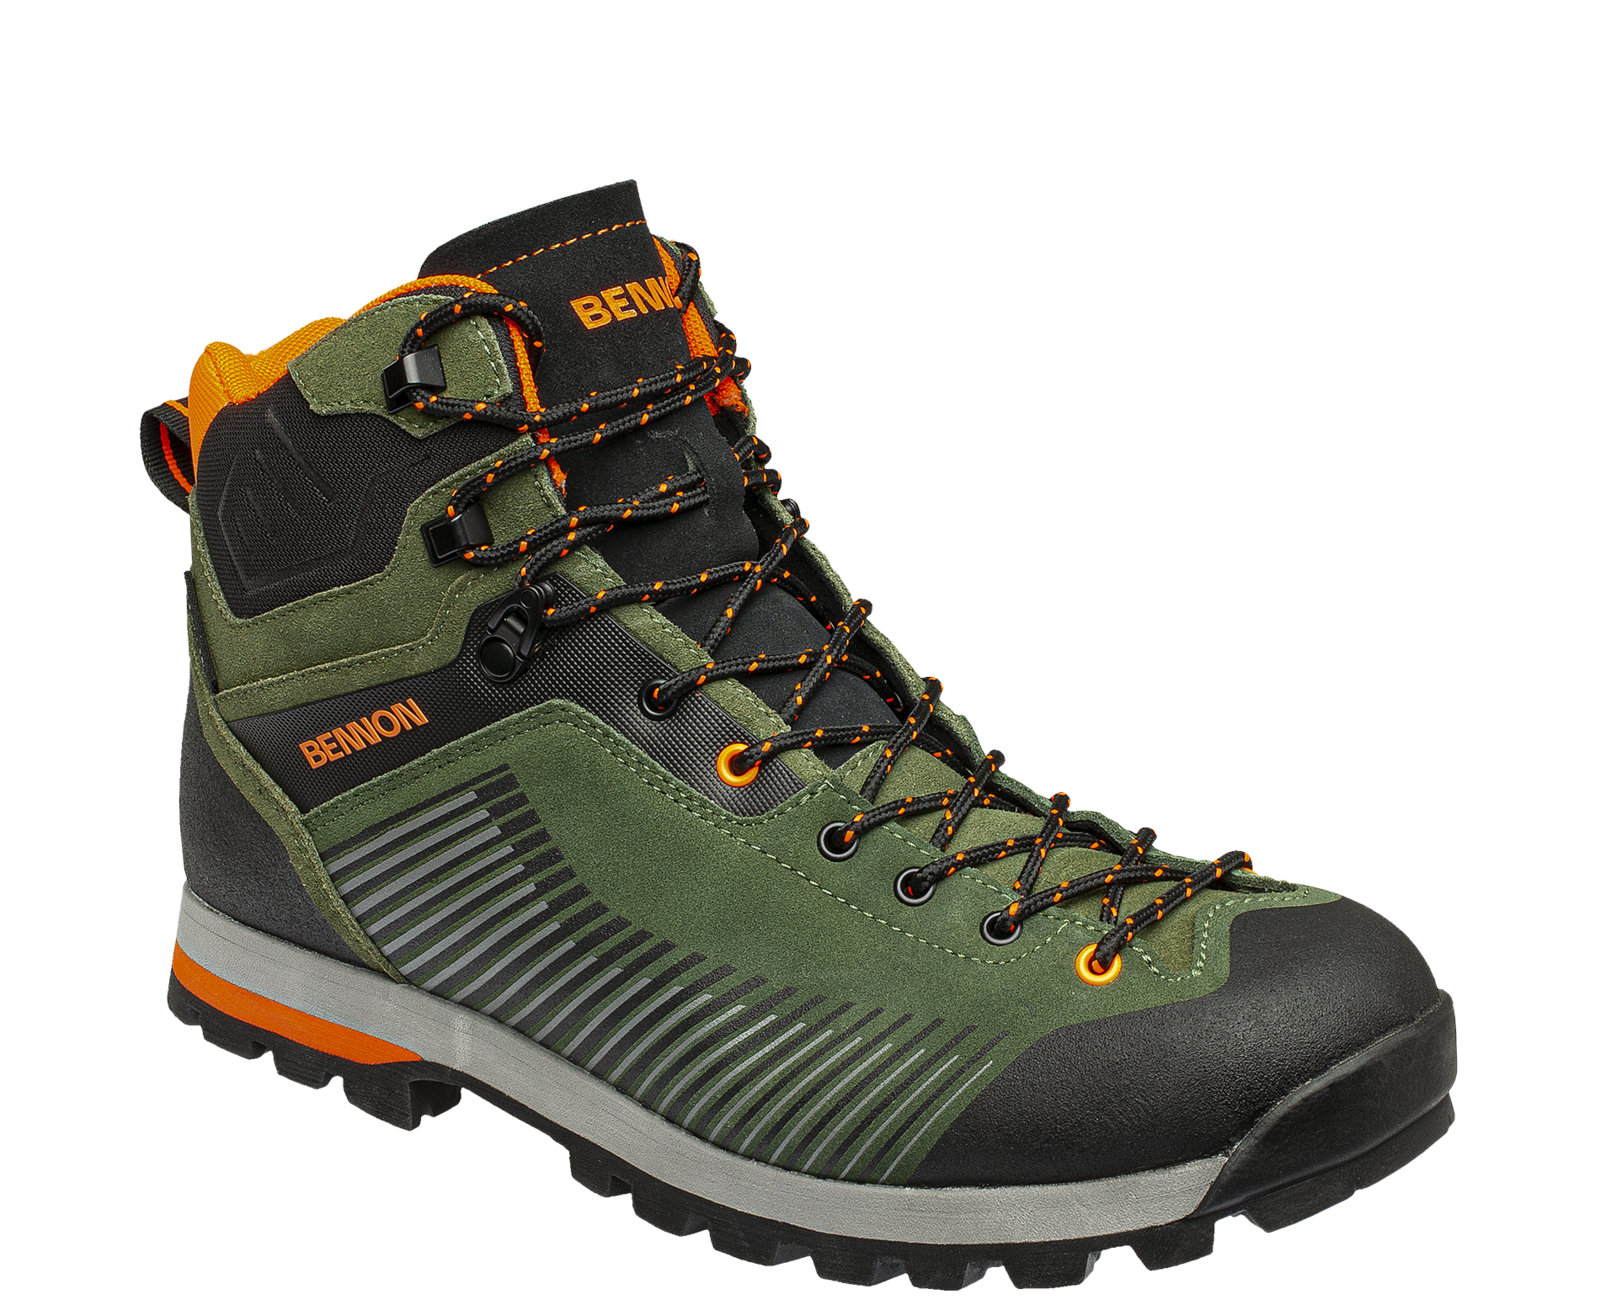 Kožená členková obuv s membránou Bennon Peak Green High - veľkosť: 38, farba: khaki/oranžová